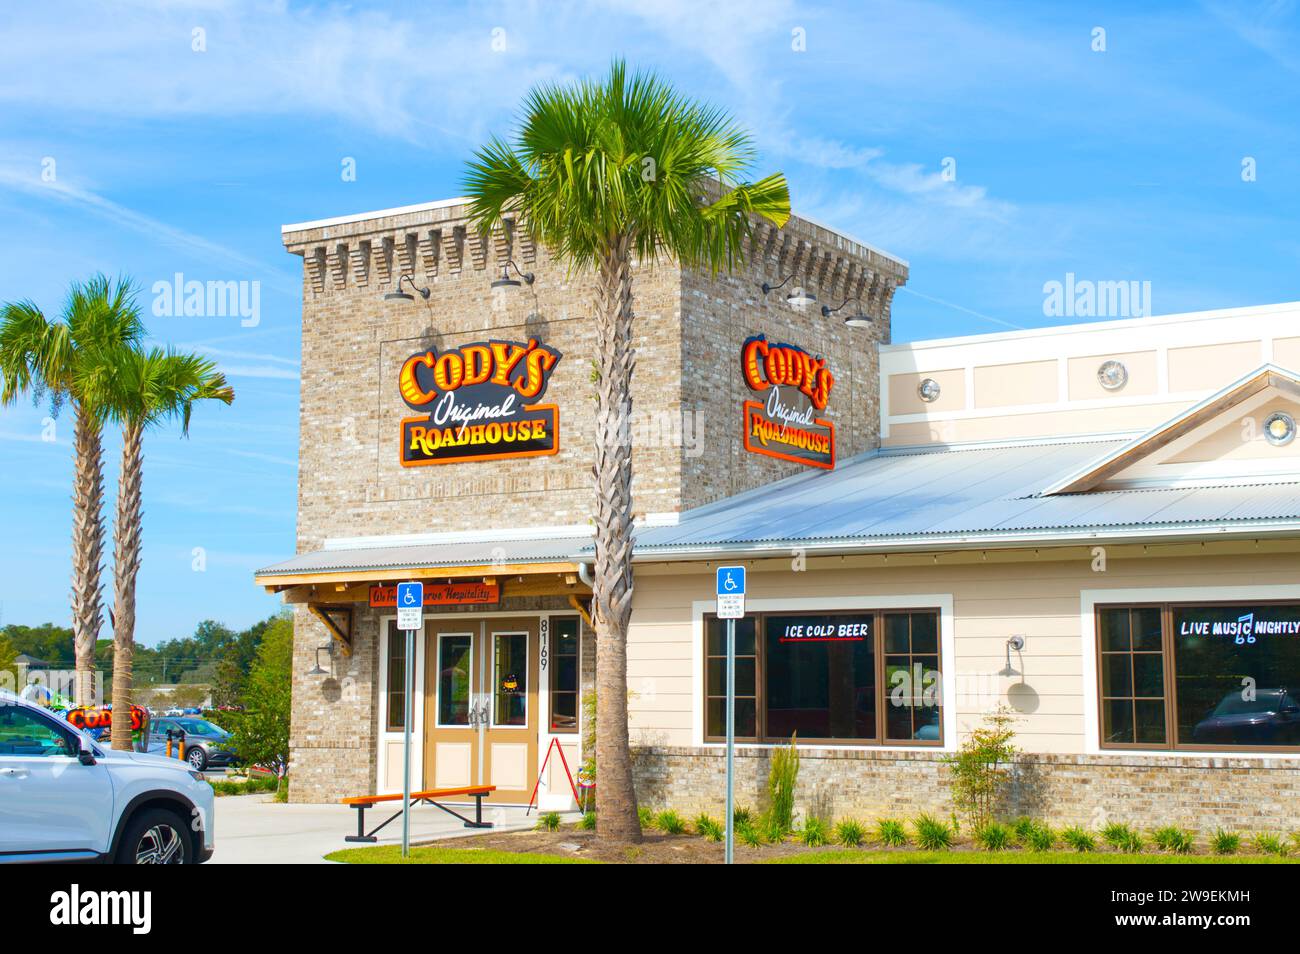 Codys Original Roadhouse Restaurant. Ein unterhaltsames, zwangloses, familienfreundliches Roadhouse, das handgeschnittene Steaks und „Just Plain Good Food“ serviert Stockfoto